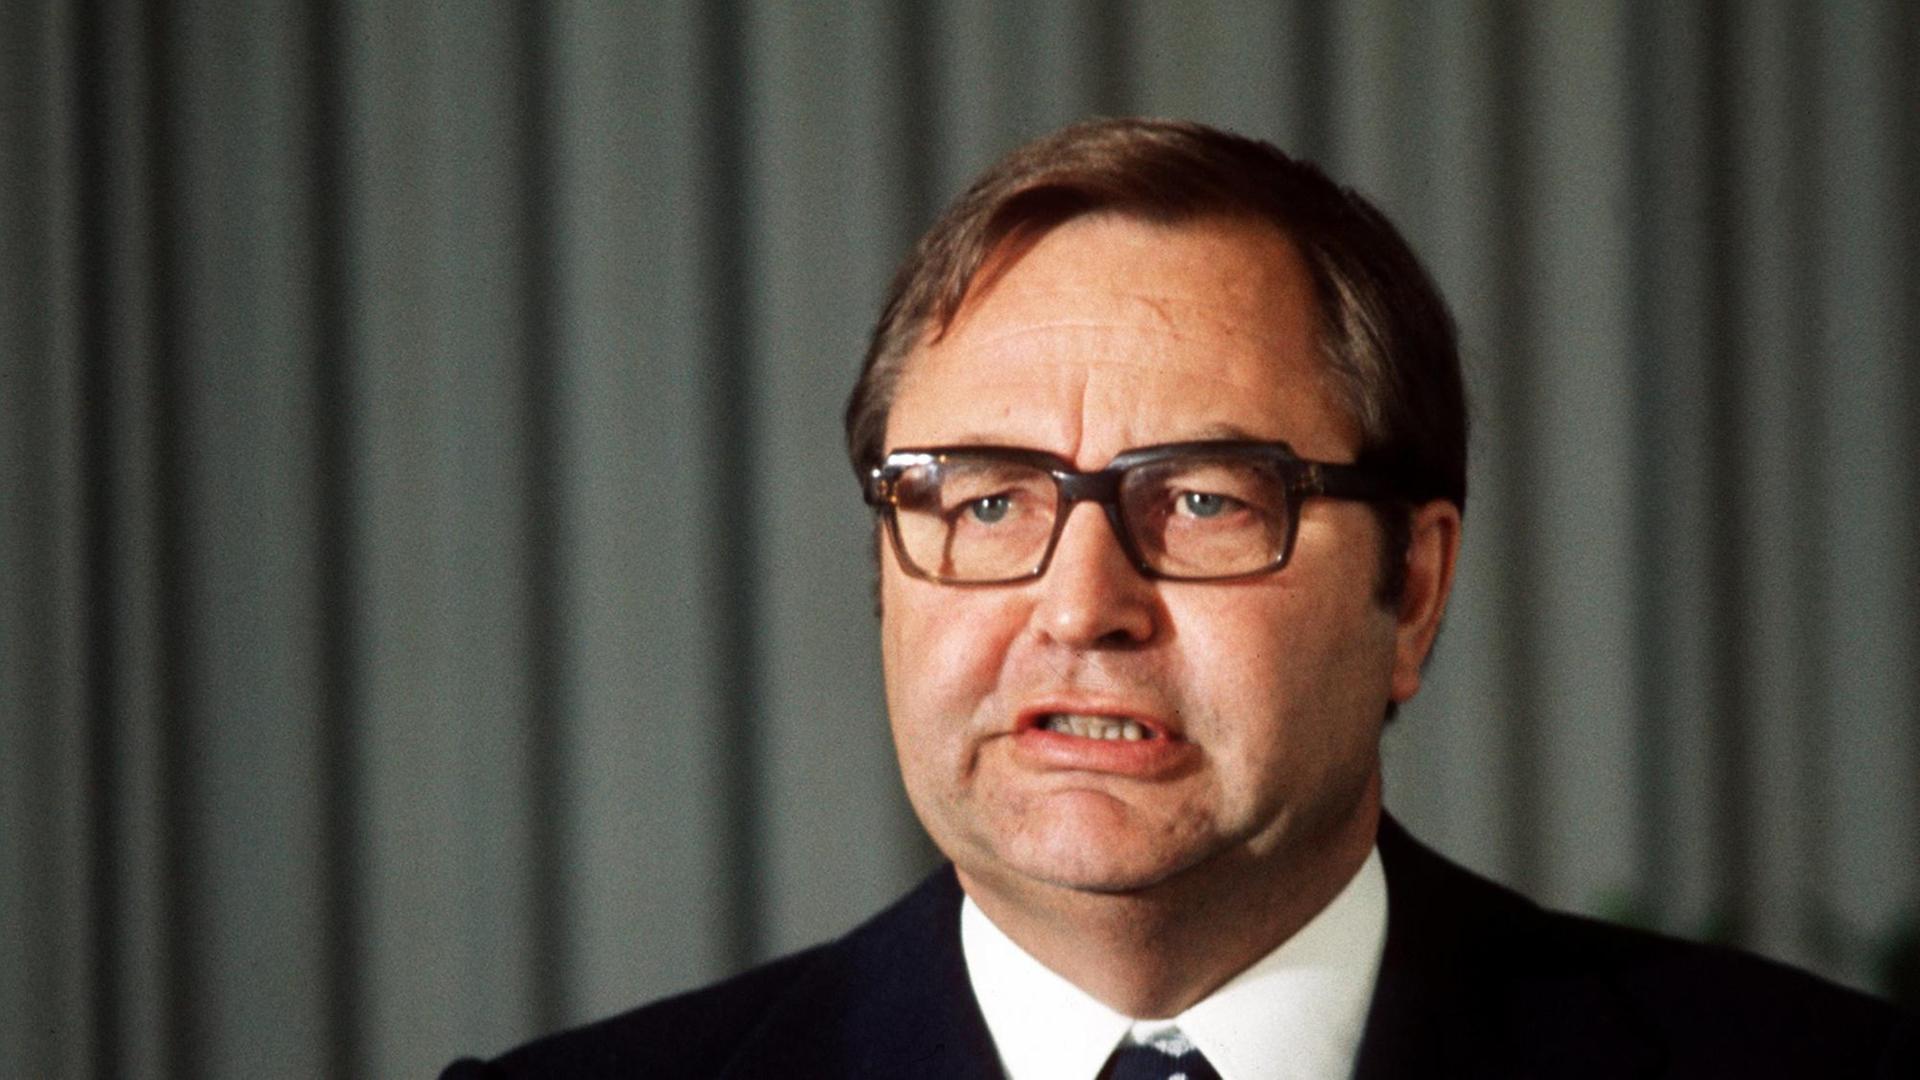 Der frühere BKA-Chef Horst Herold trägt eine große Brille und schaut streng